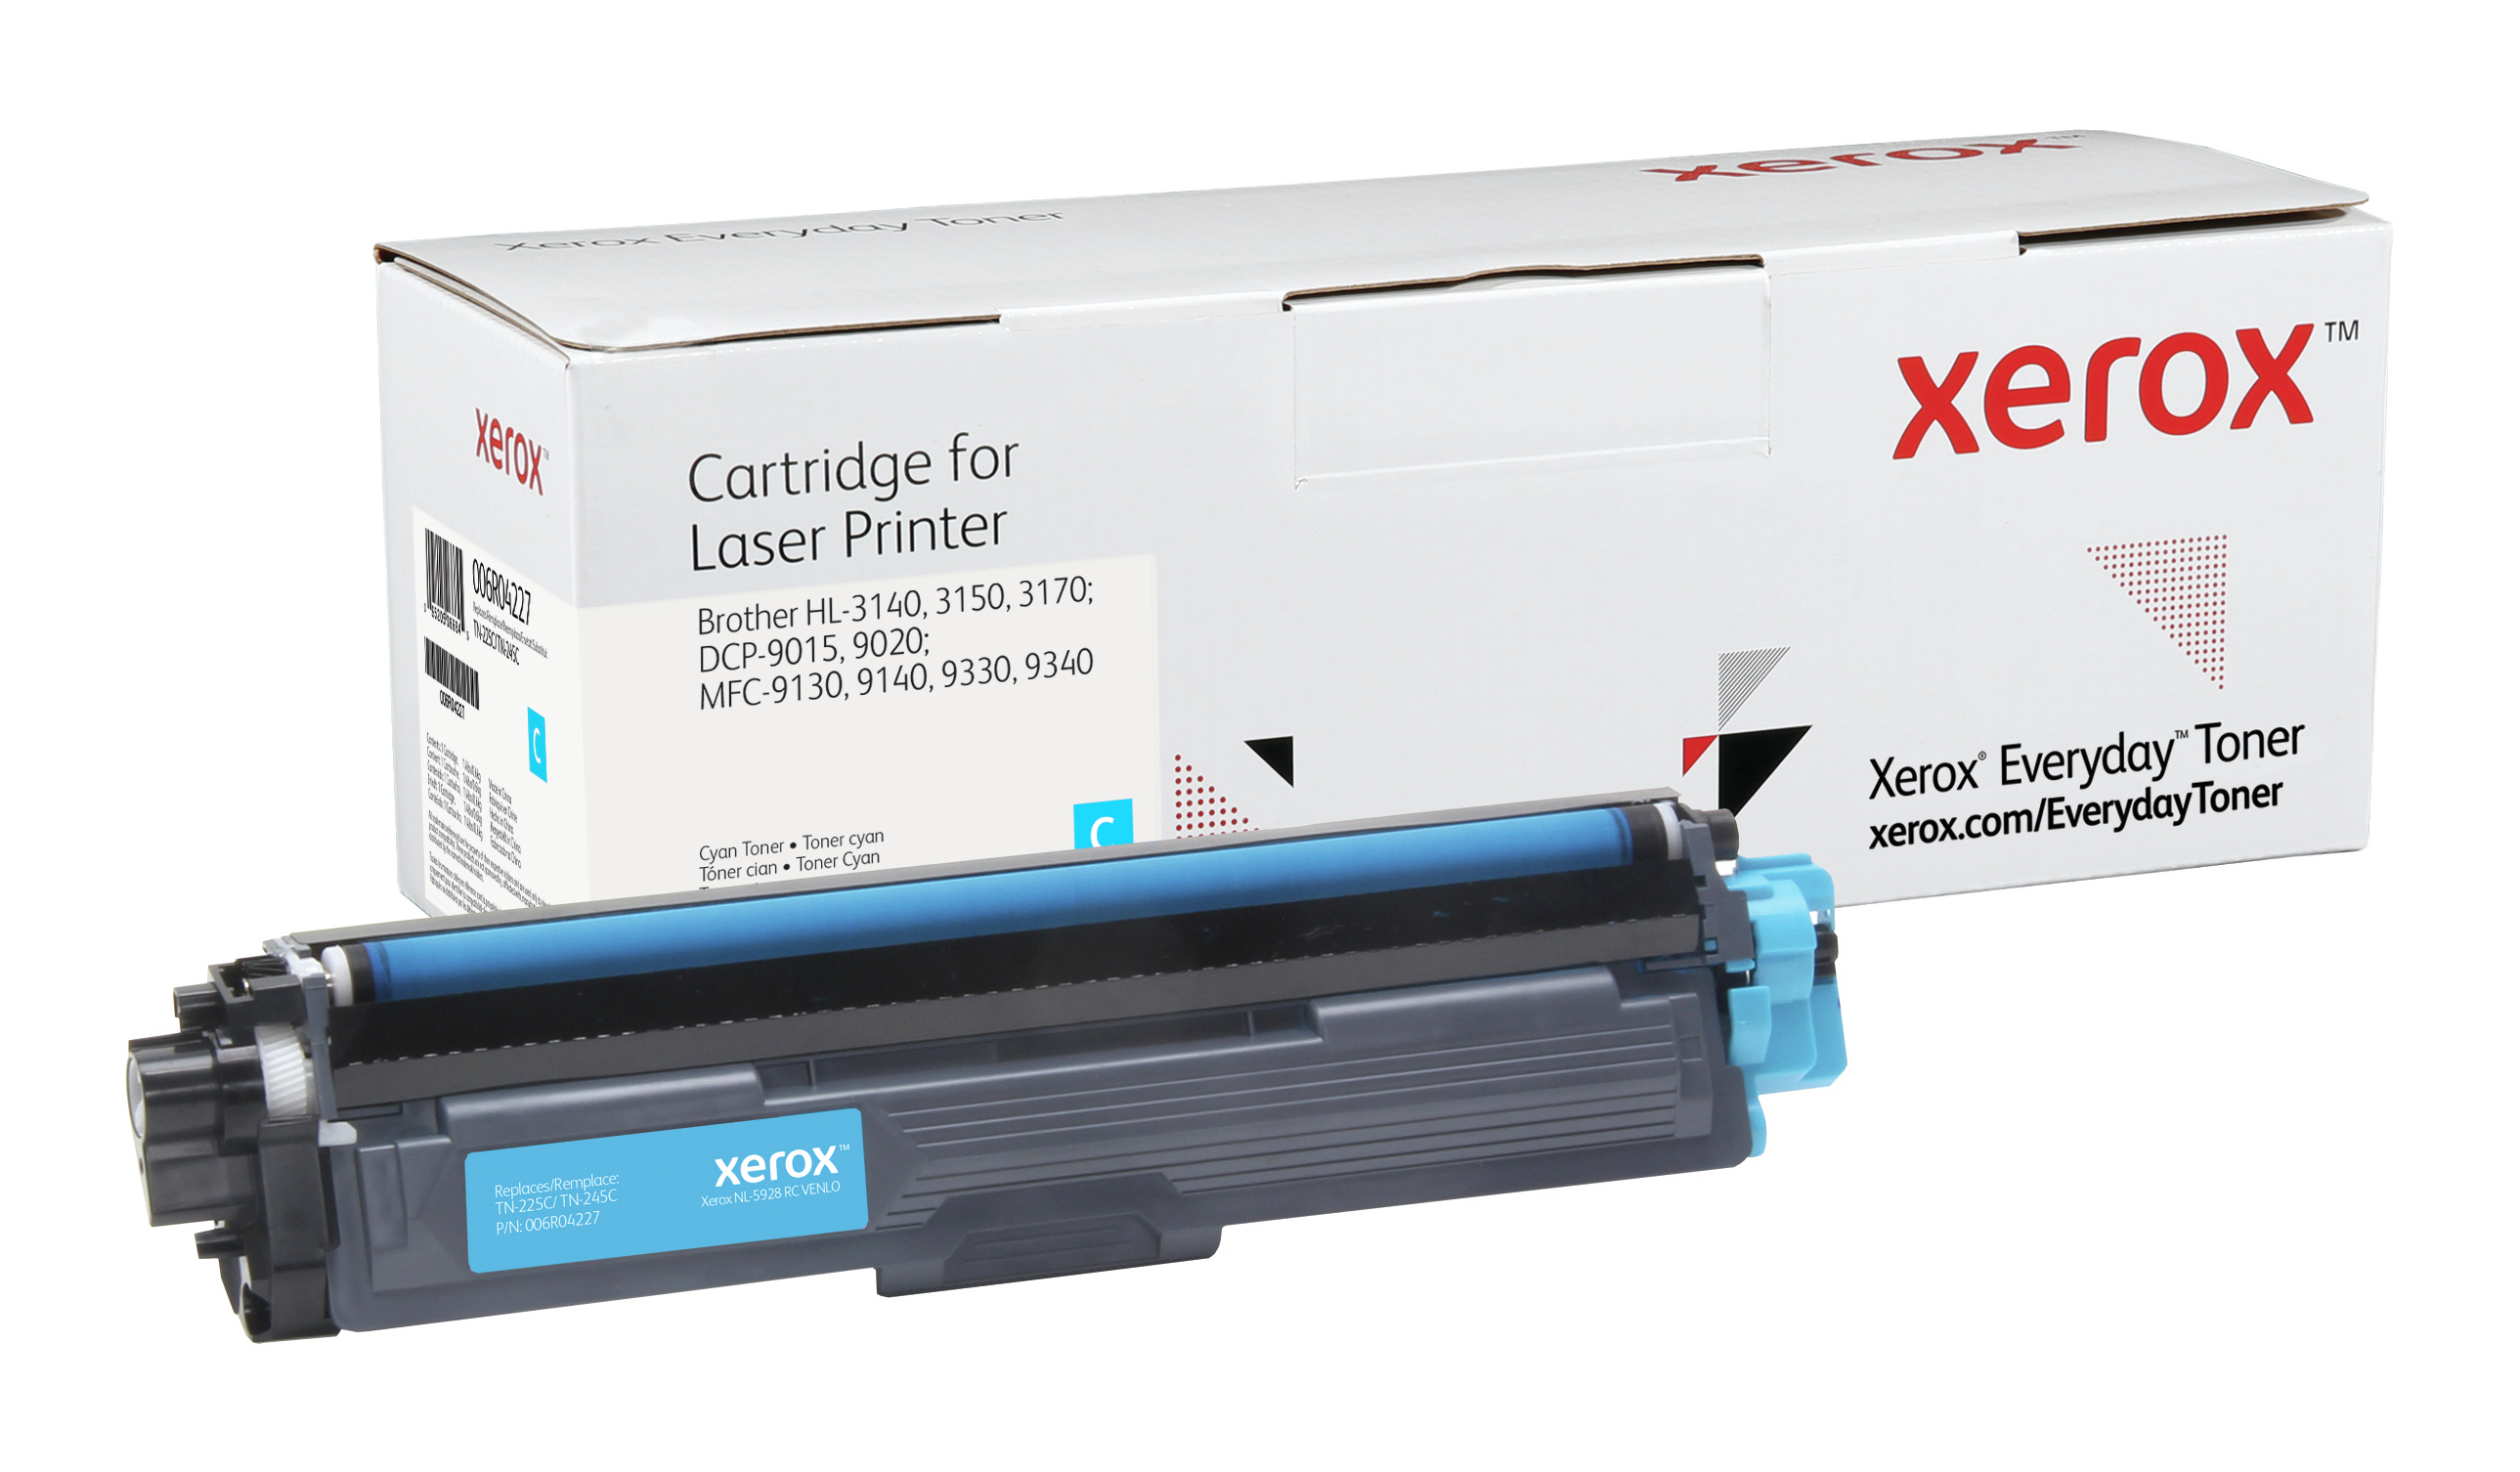 Xerox Everyday Cyaan Toner compatibel met Brother TN-225C/ TN-245C, High capacity